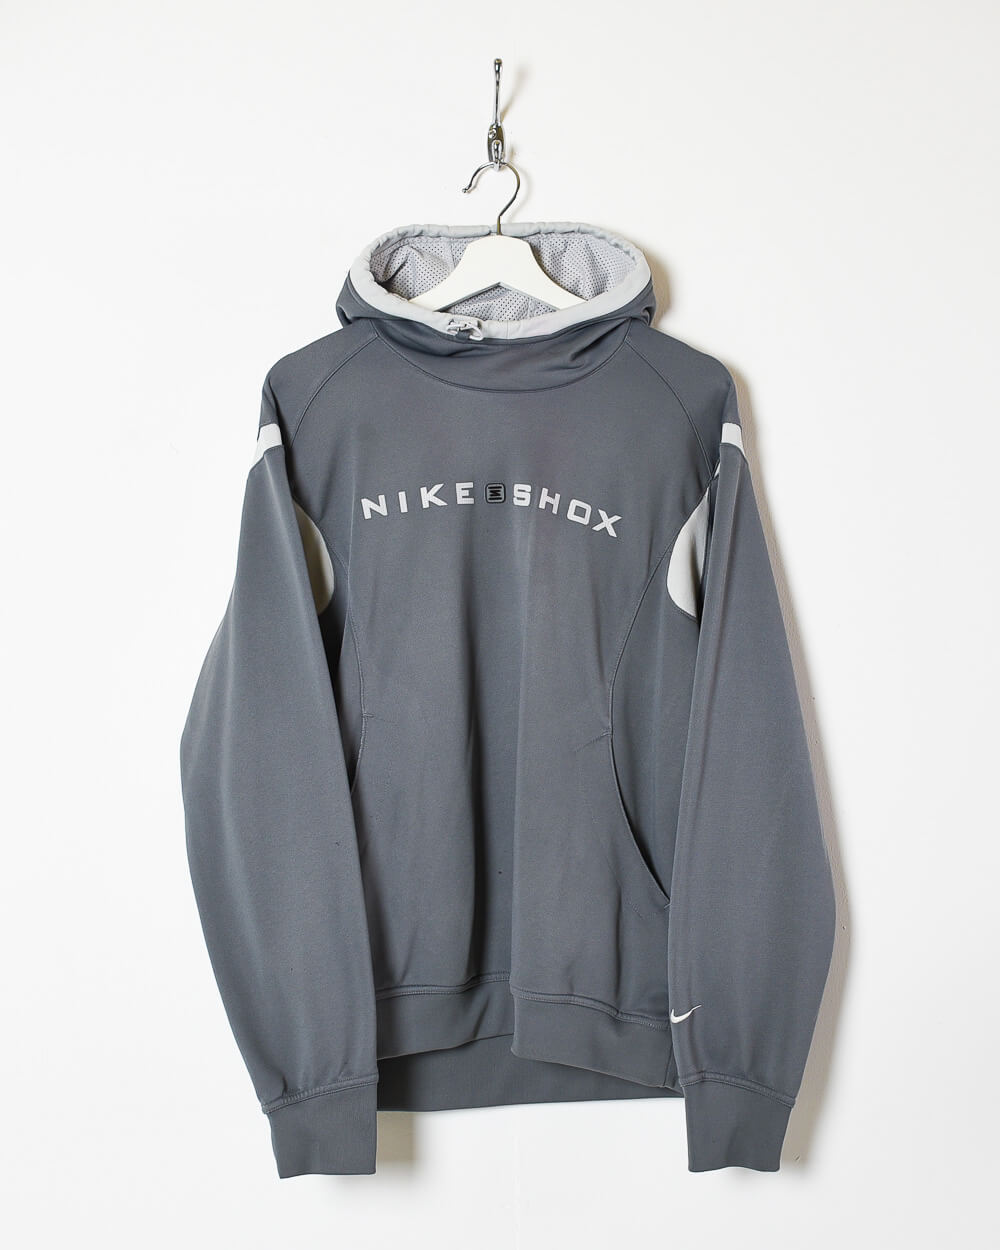 Grey Nike Shod Hoodie - Medium